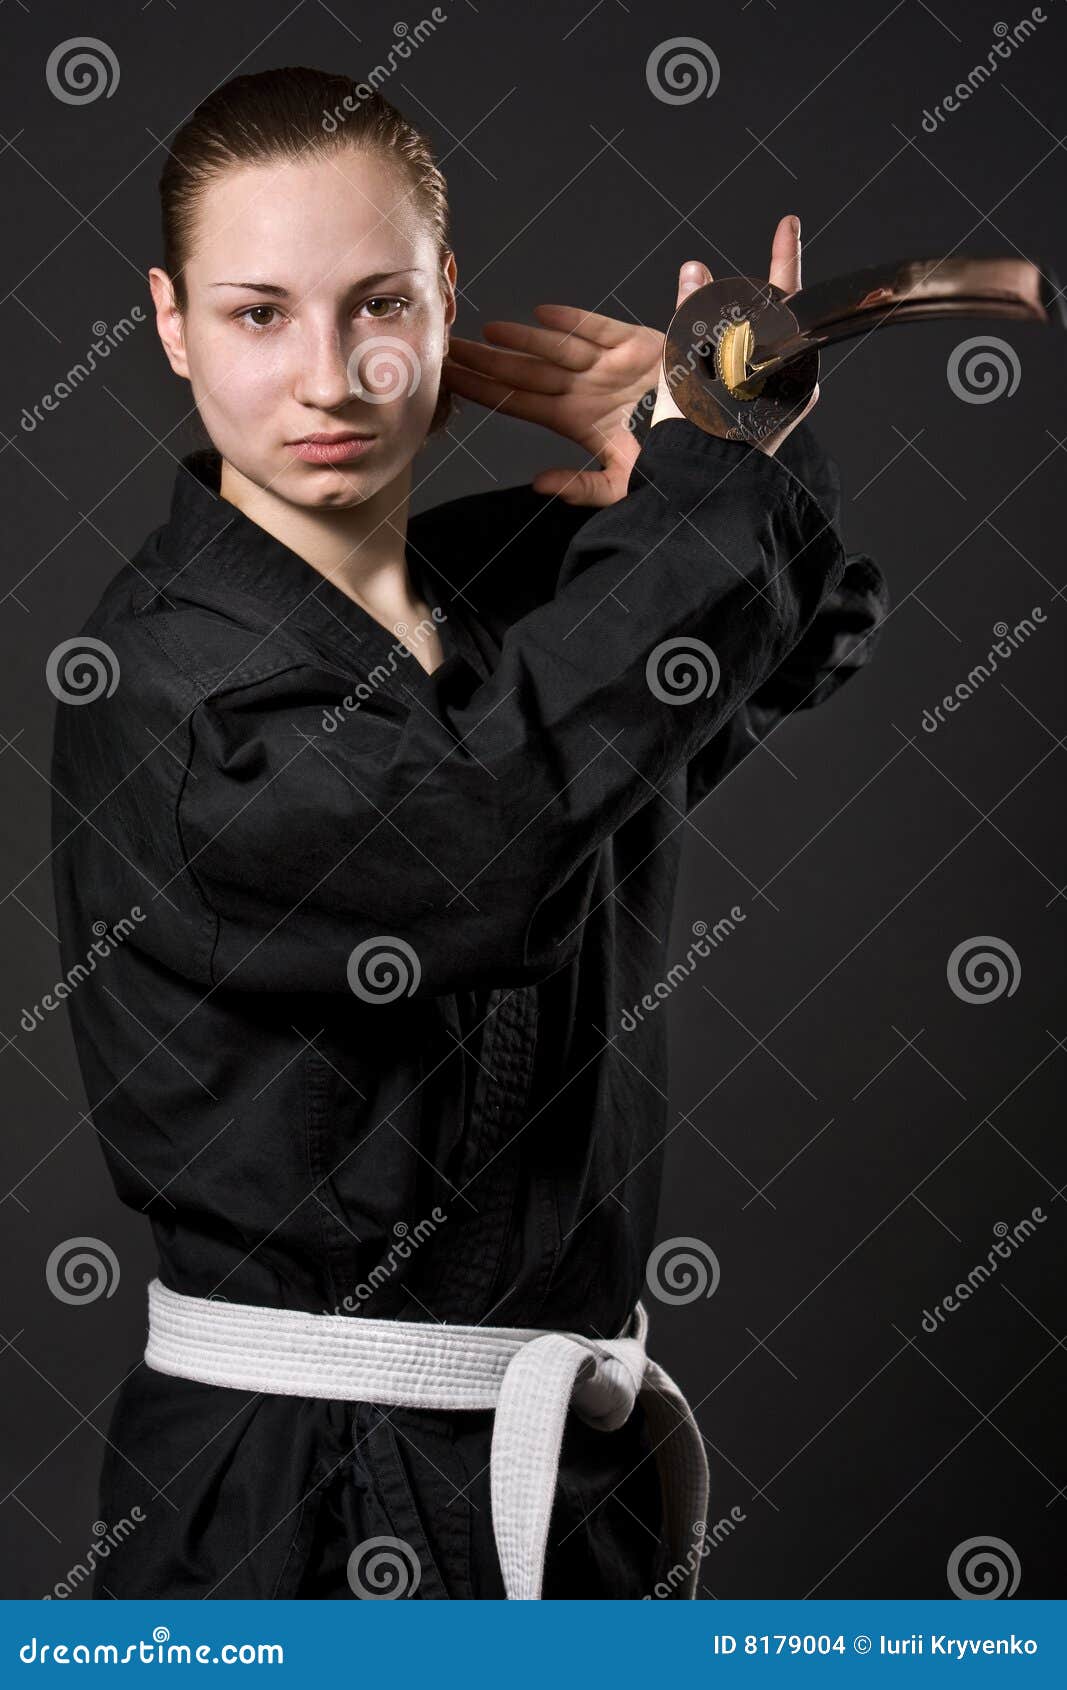 Female Samurai Pose